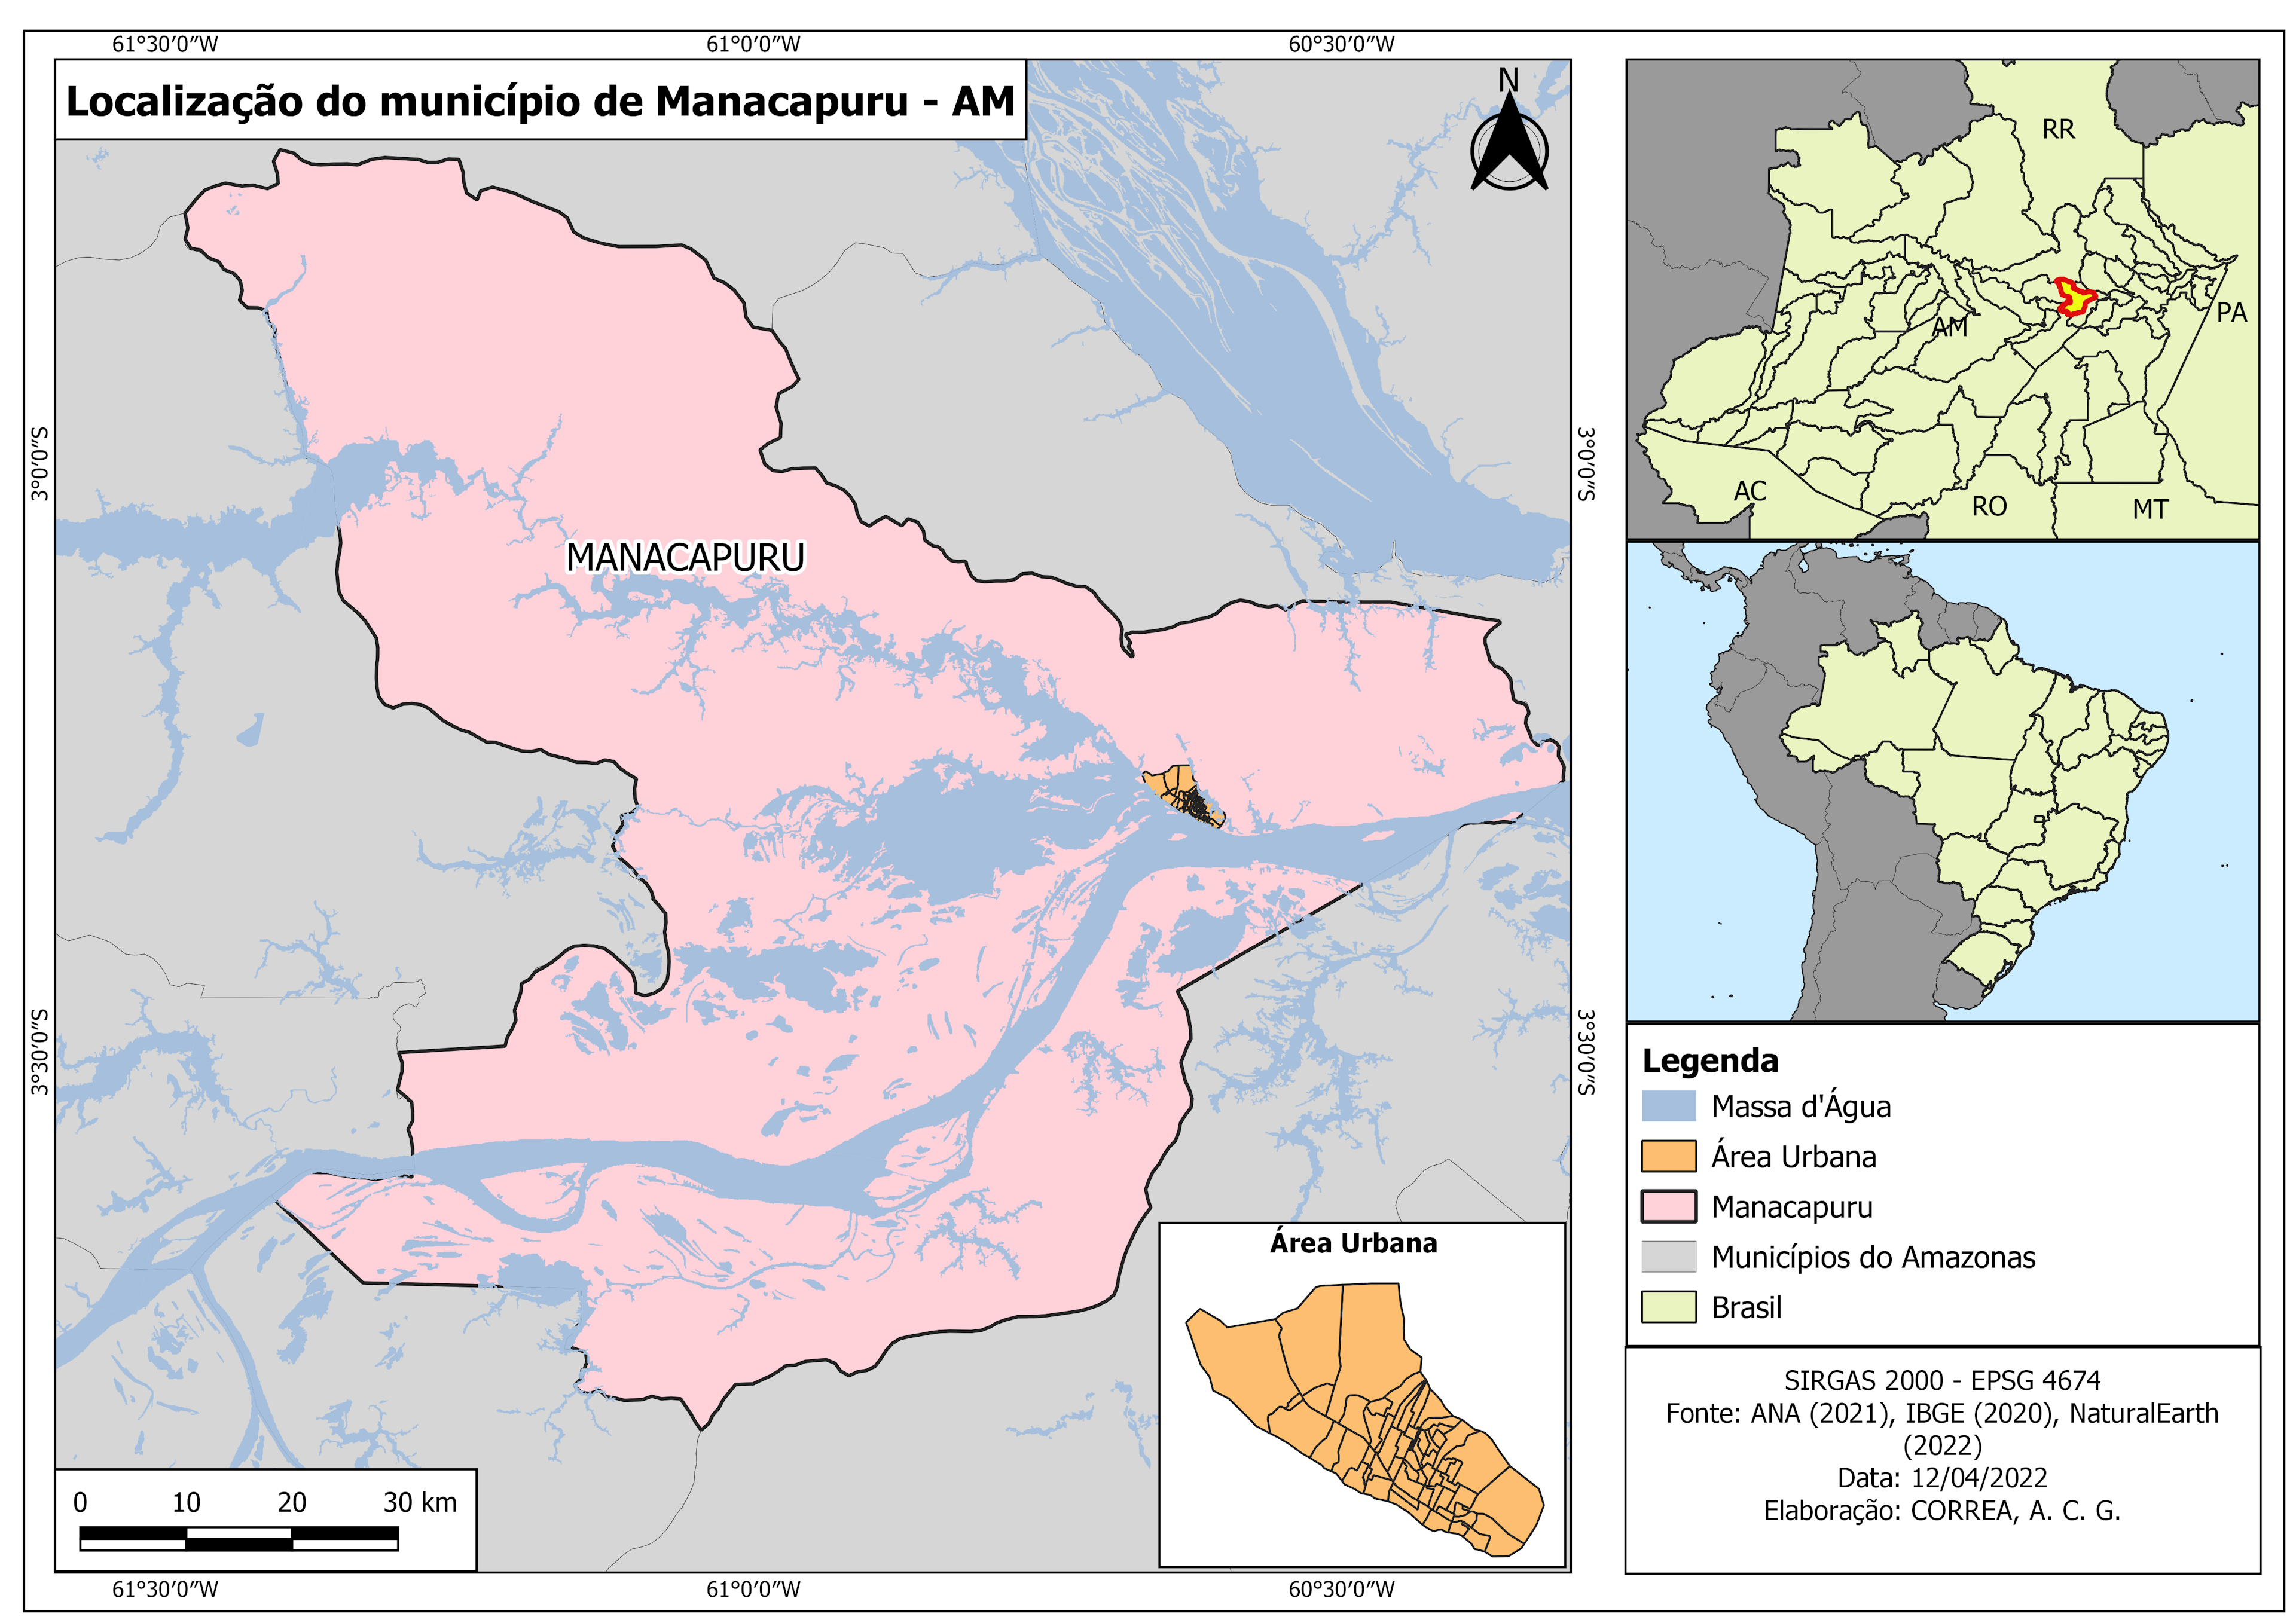 Localização do Município de Manacapuru